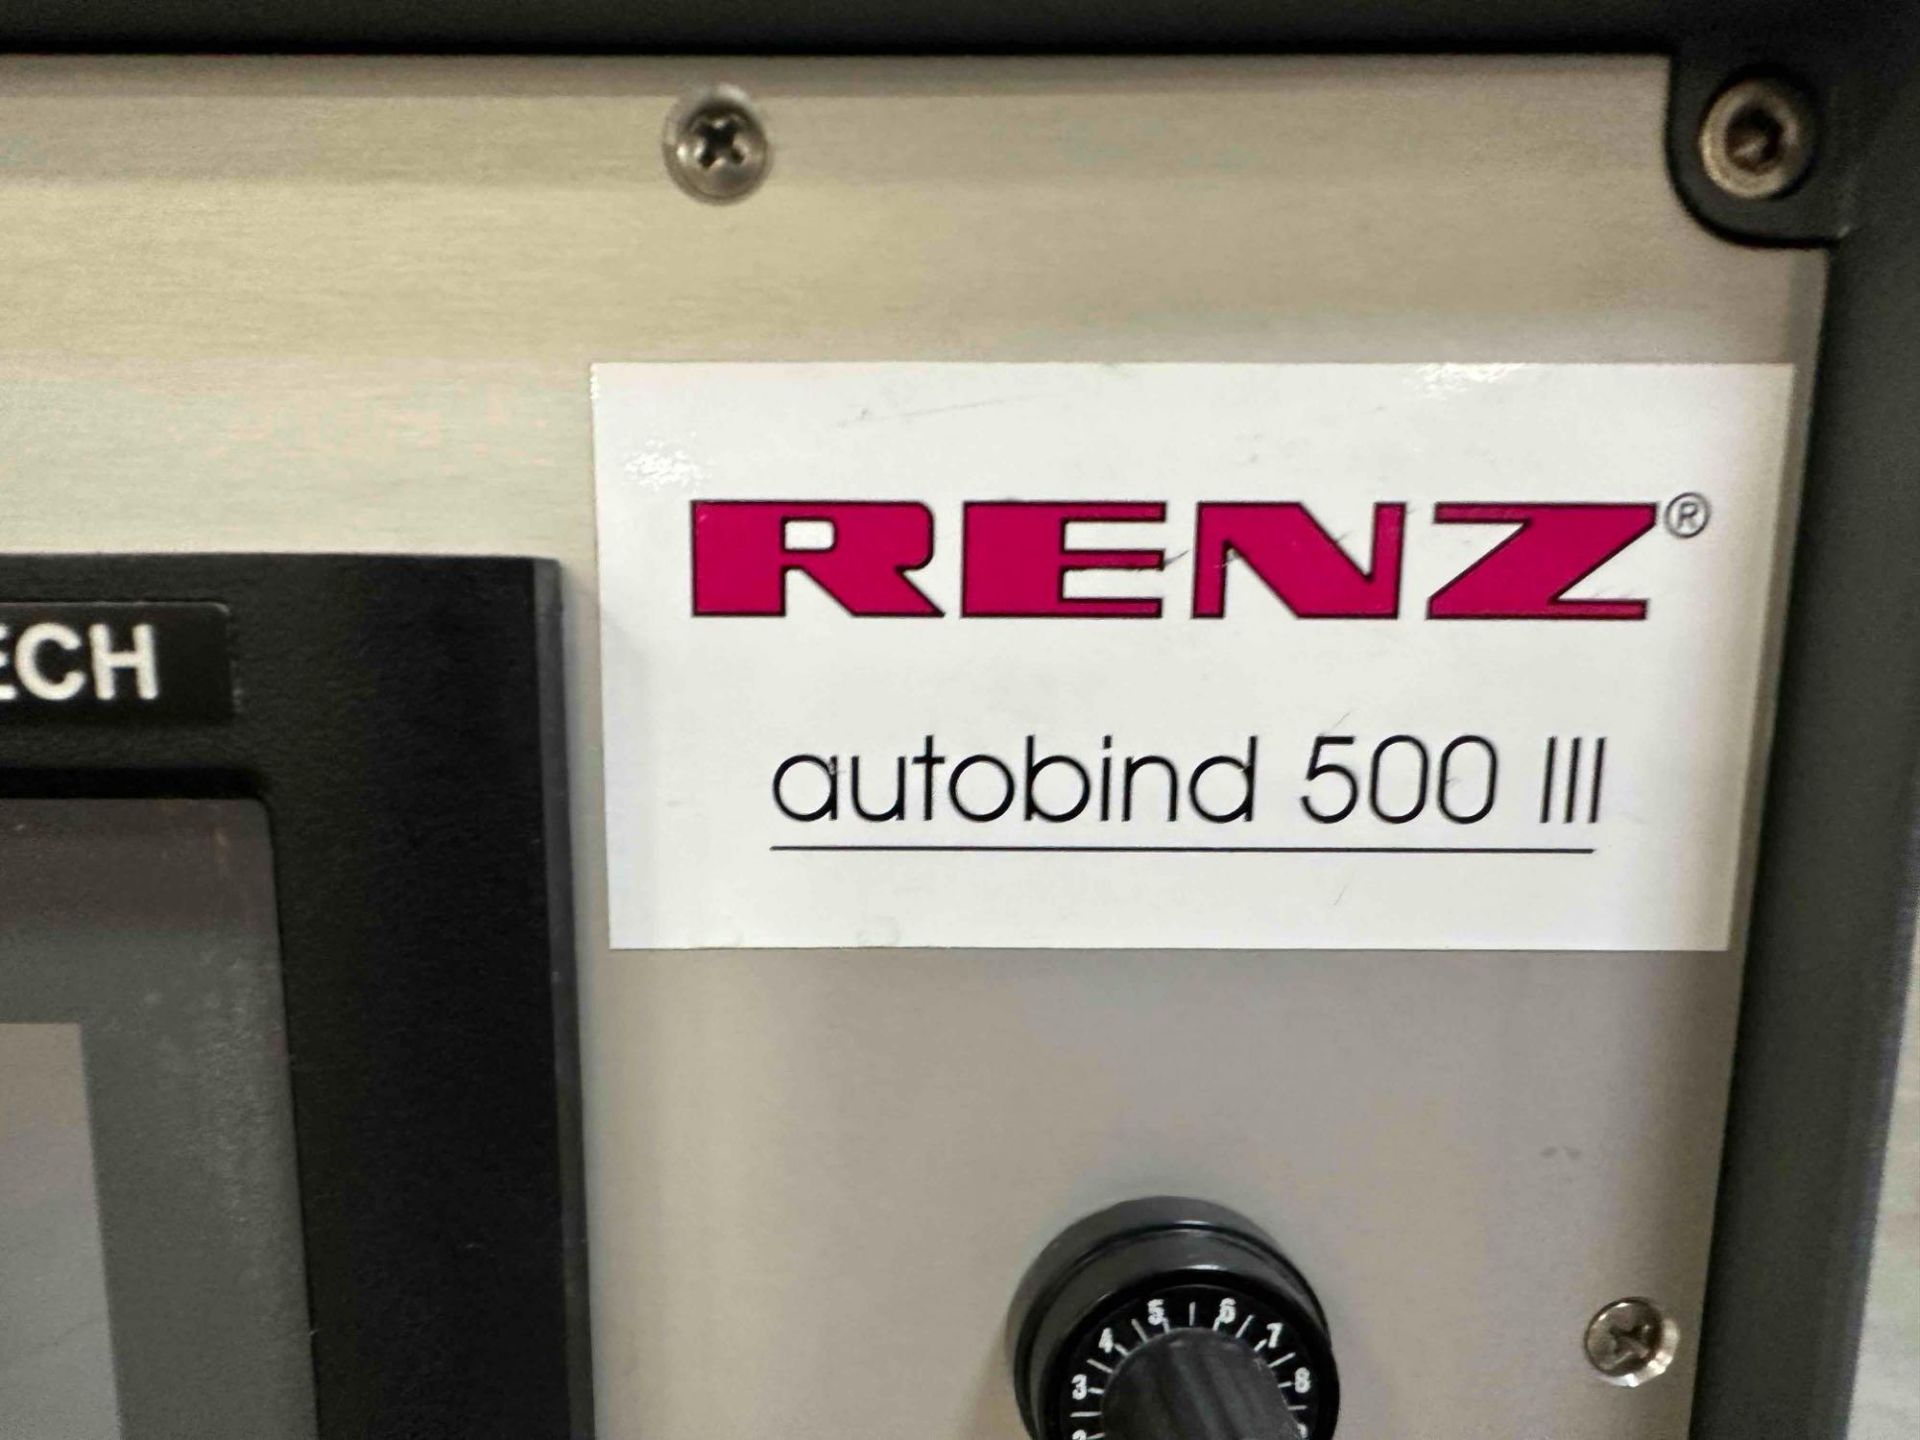 Renz Autobind 500 III - Image 8 of 9